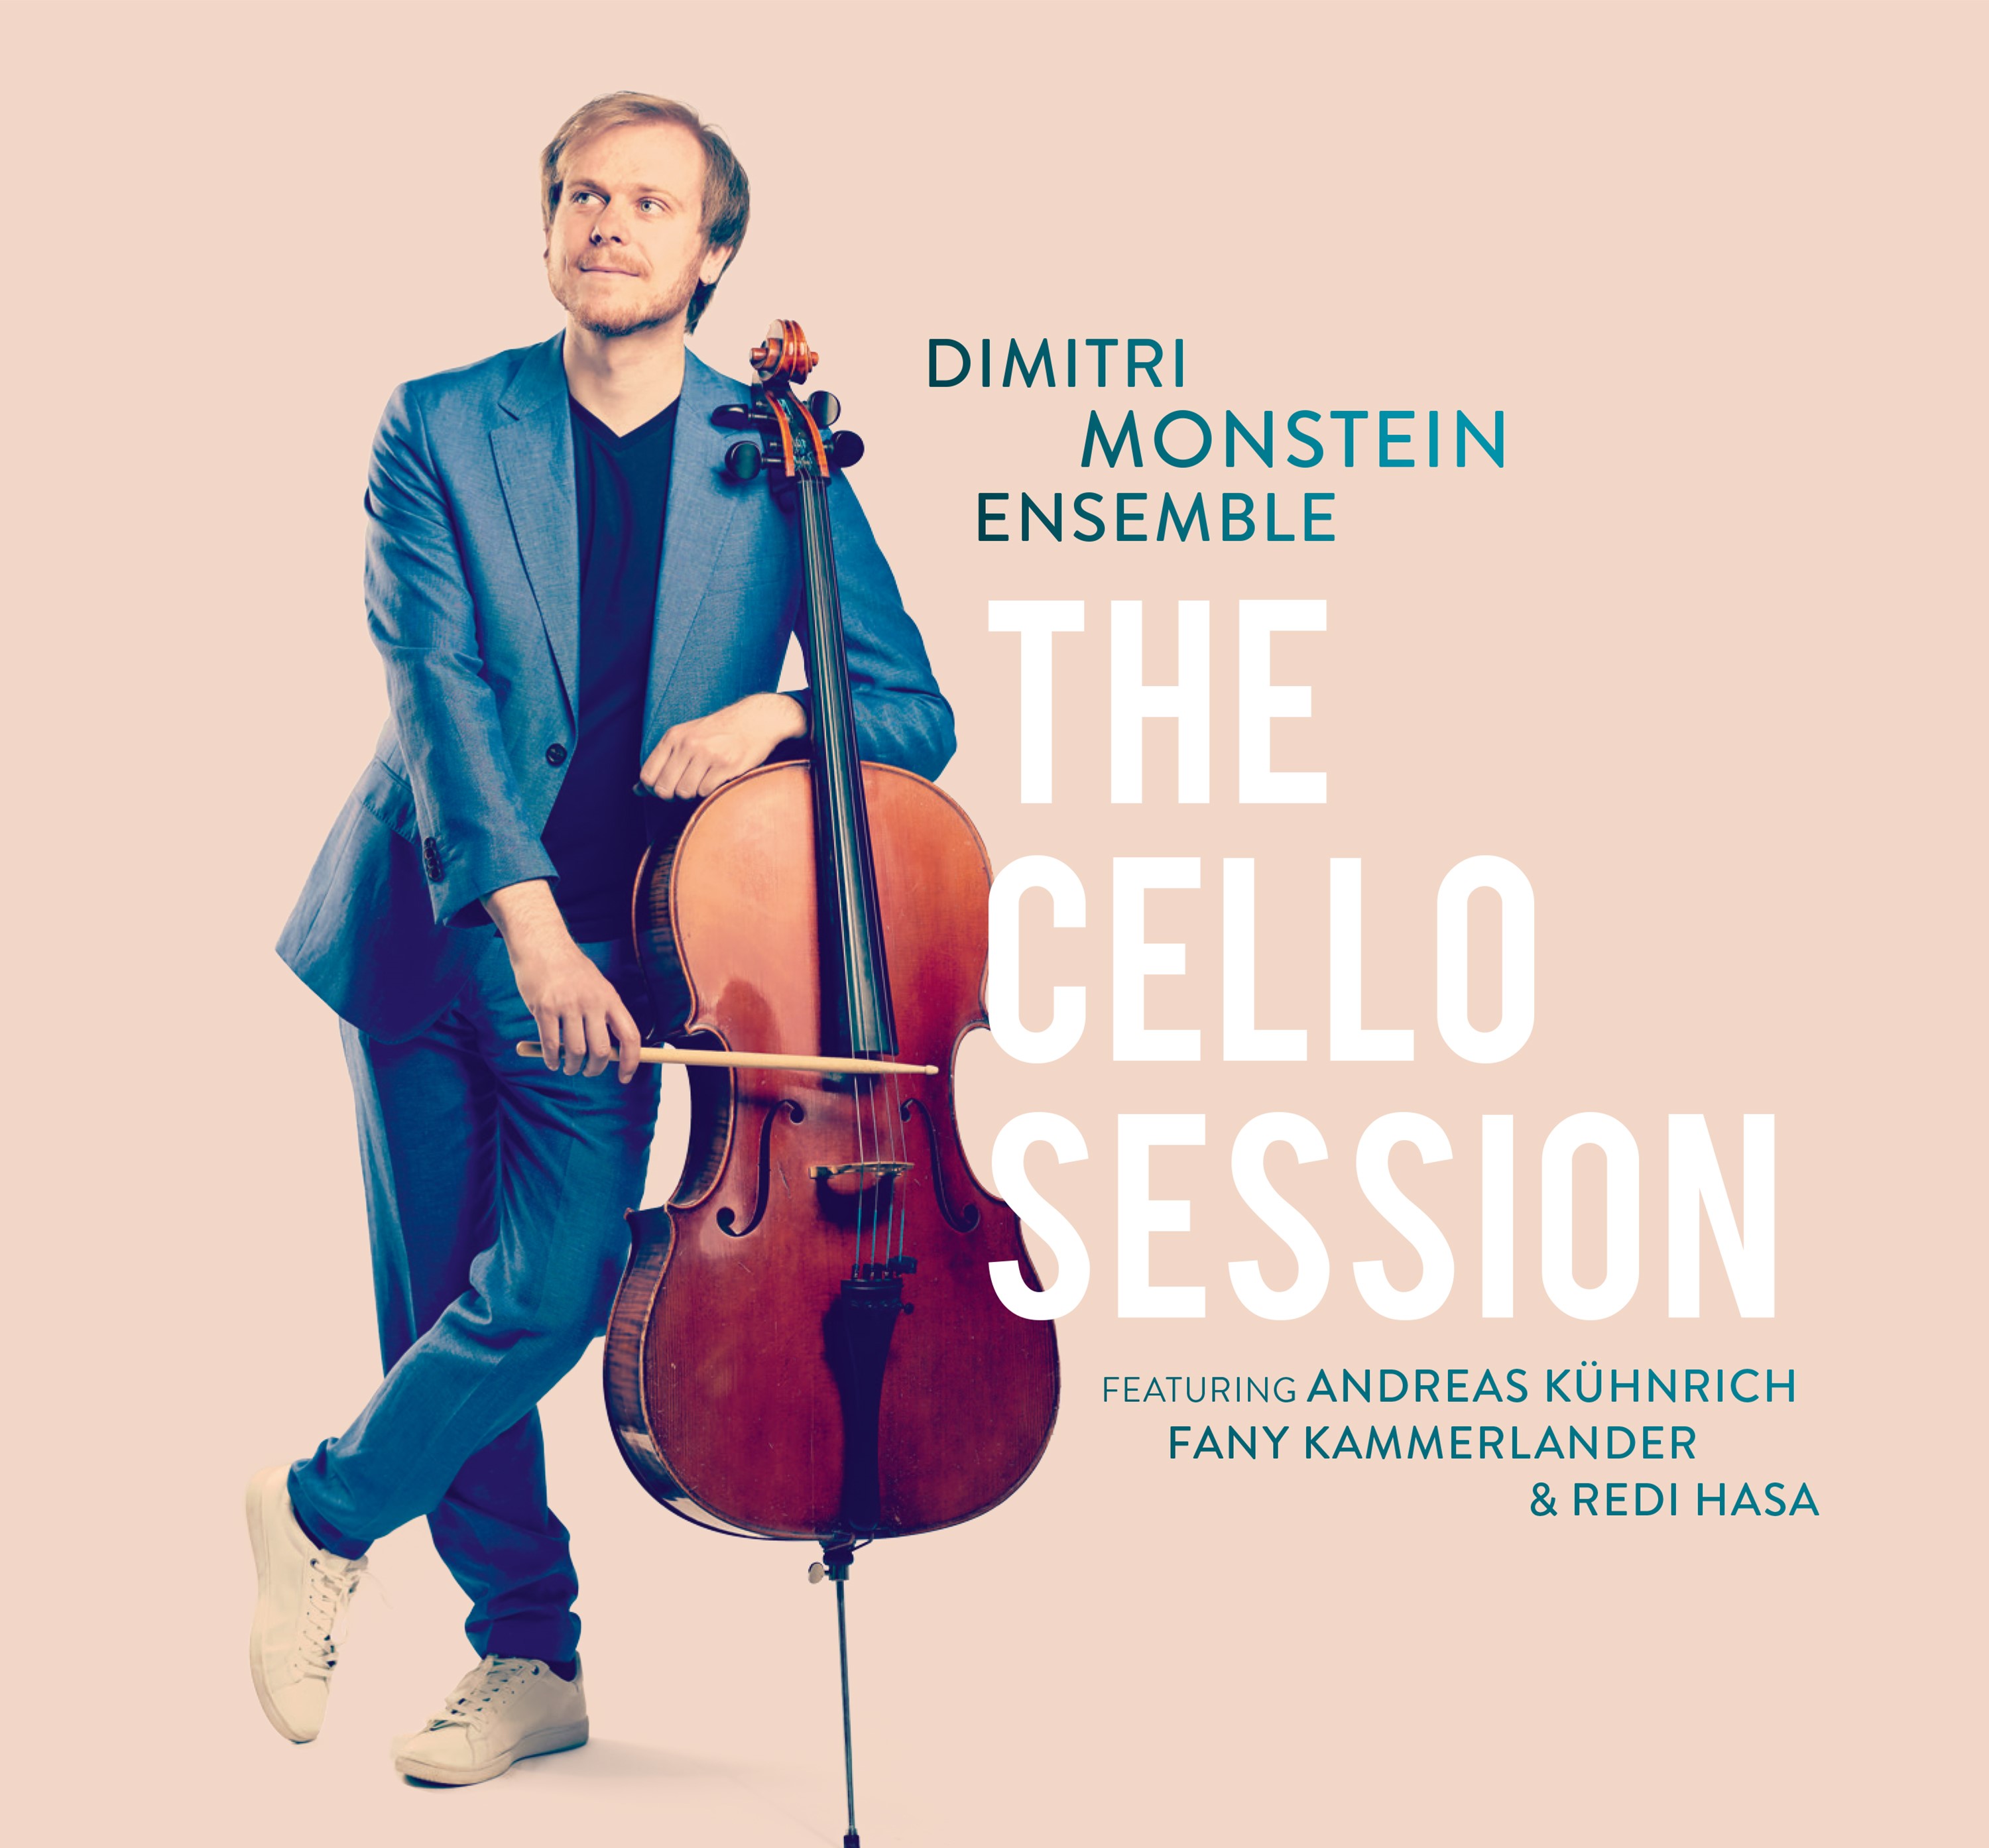 Kultur & Kulinarik - Dimitri Monstein Ensemble feat. Andreas Kühnrich  The Cello Session Tour